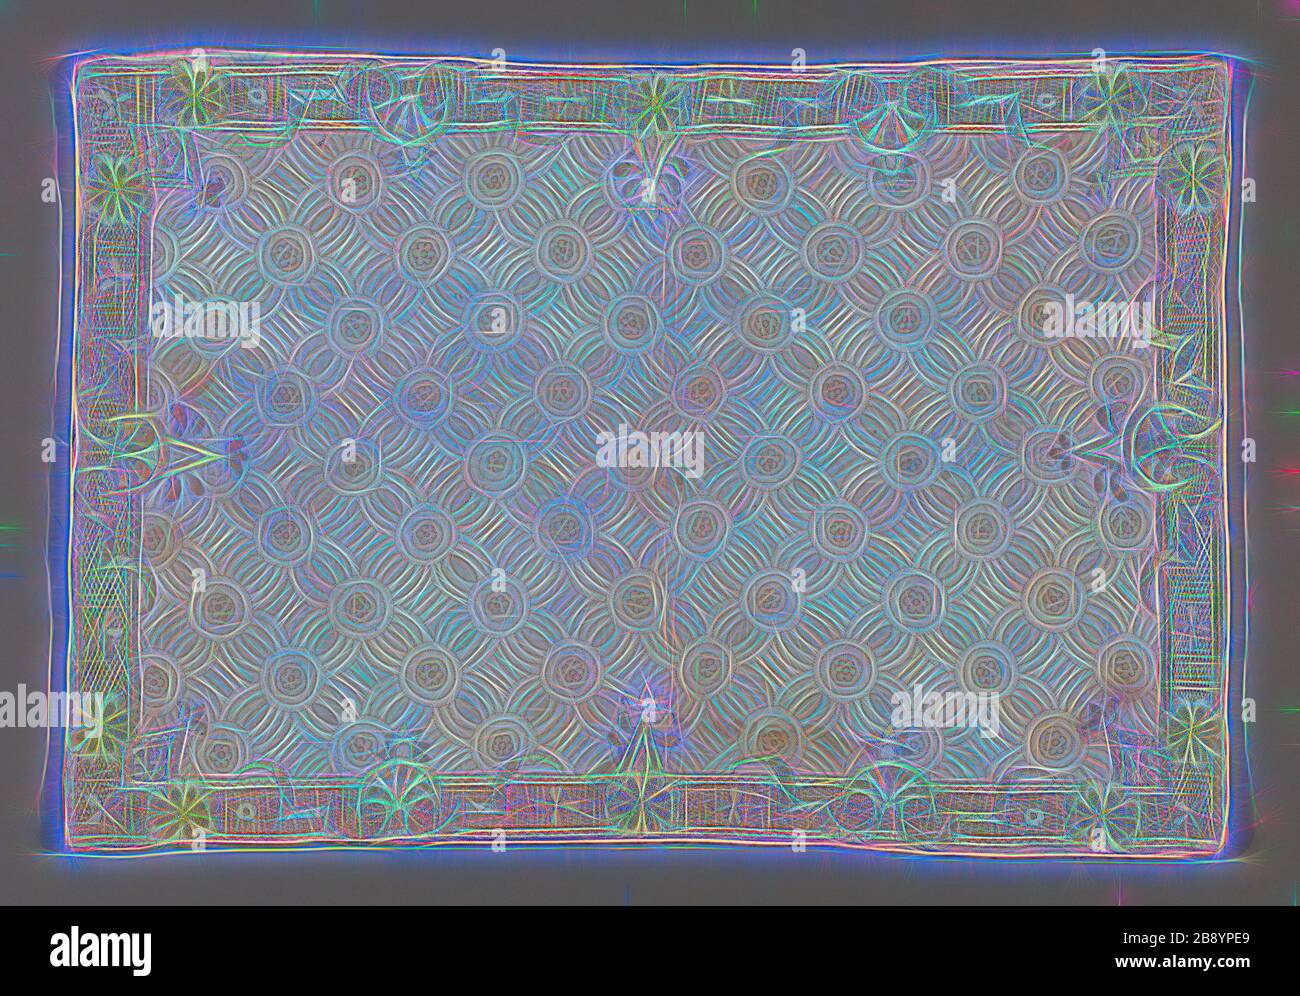 Pillow Sham, ca. 1720, England, Baumwolle, einfarbiges Webmuster, unterlegt mit Leinen, einfarbiger Webart, bestickt mit Seidenseide und Seidengarnen im Rücken, Fischgrätknochen, individuelle Satin- und Satinnähte, verlegte Arbeit, Husten, Und französischen Knoten, 35,2 × 51 cm (13 7/8 × 20 1/8 Zoll), von Gibon neu vorgestellt, Design von warmem, fröhlichem Leuchten von Helligkeit und Lichtstrahlen. Klassische Kunst mit moderner Note neu erfunden. Fotografie, inspiriert vom Futurismus, die dynamische Energie moderner Technologie, Bewegung, Geschwindigkeit und Kultur revolutionieren. Stockfoto